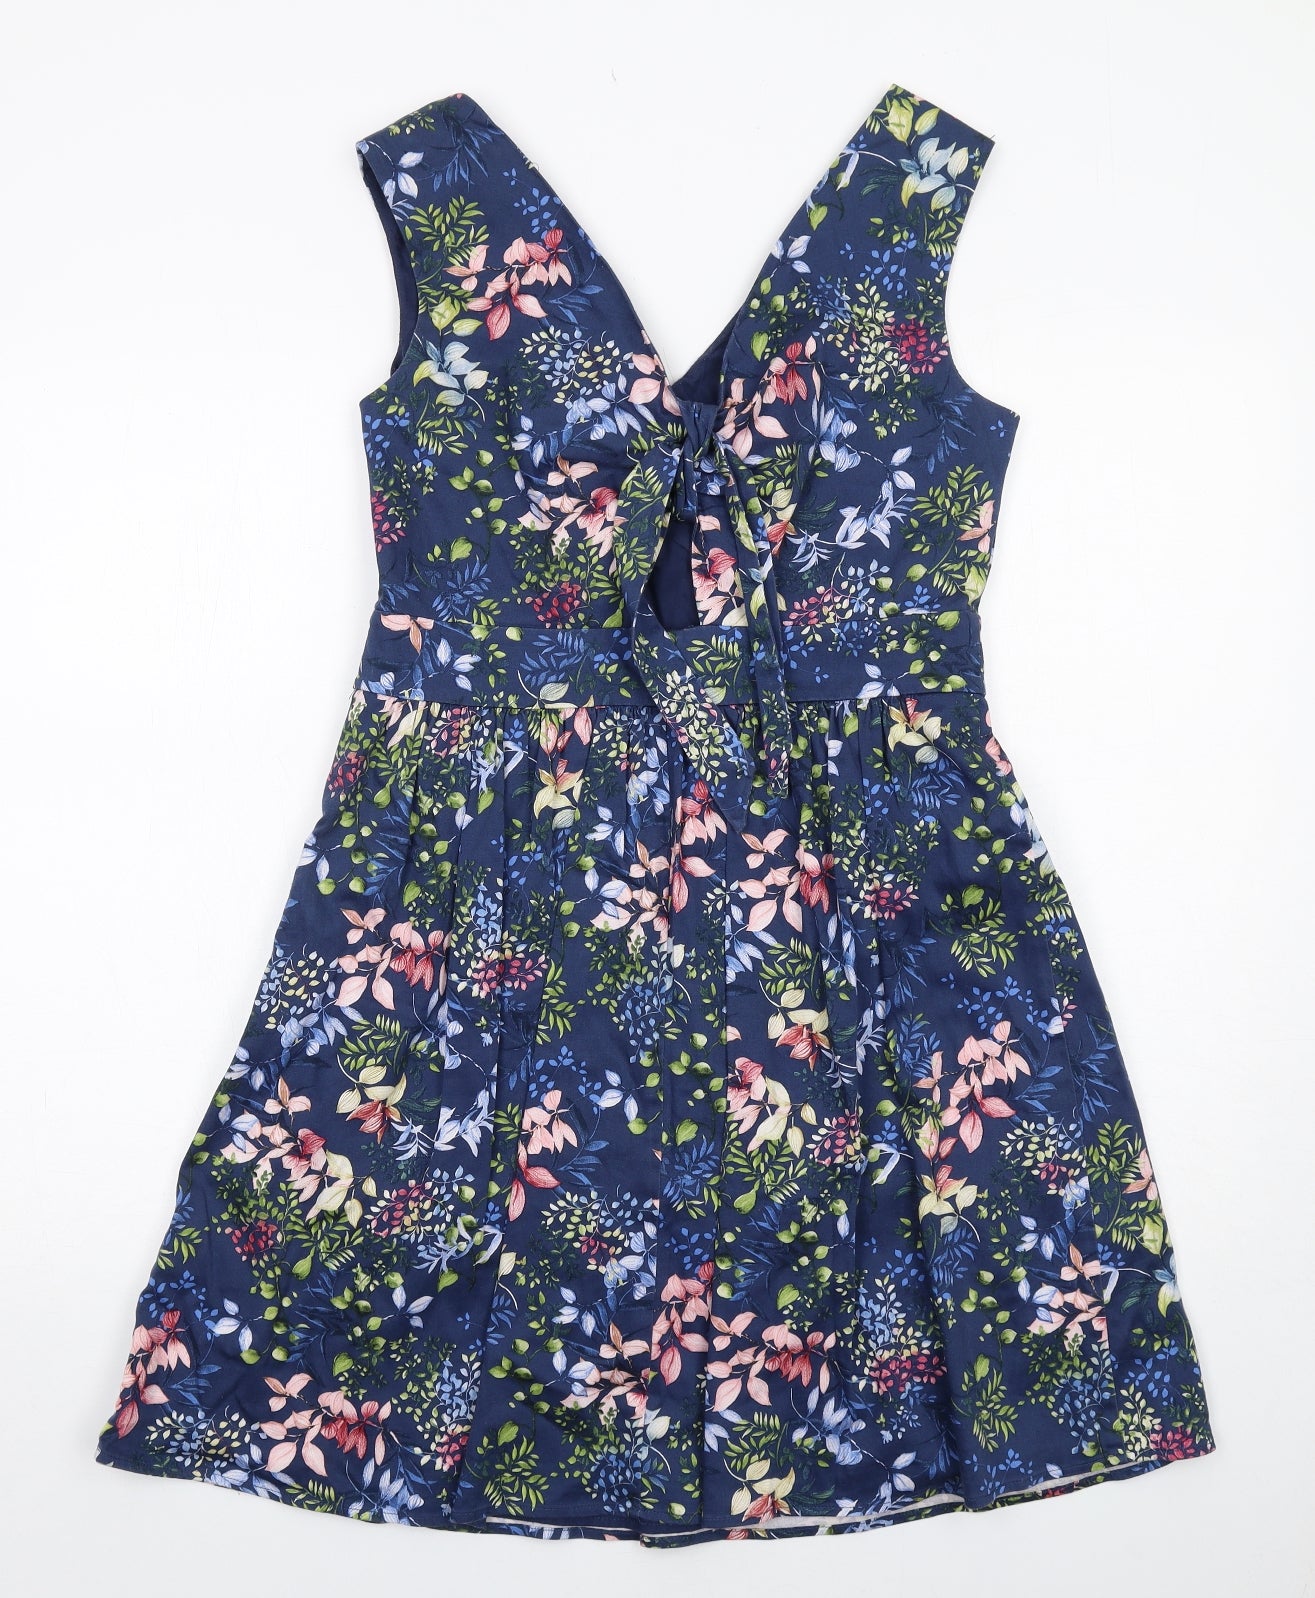 Esprit Womens Blue Floral Cotton Tank Dress Size 14 V-Neck Zip